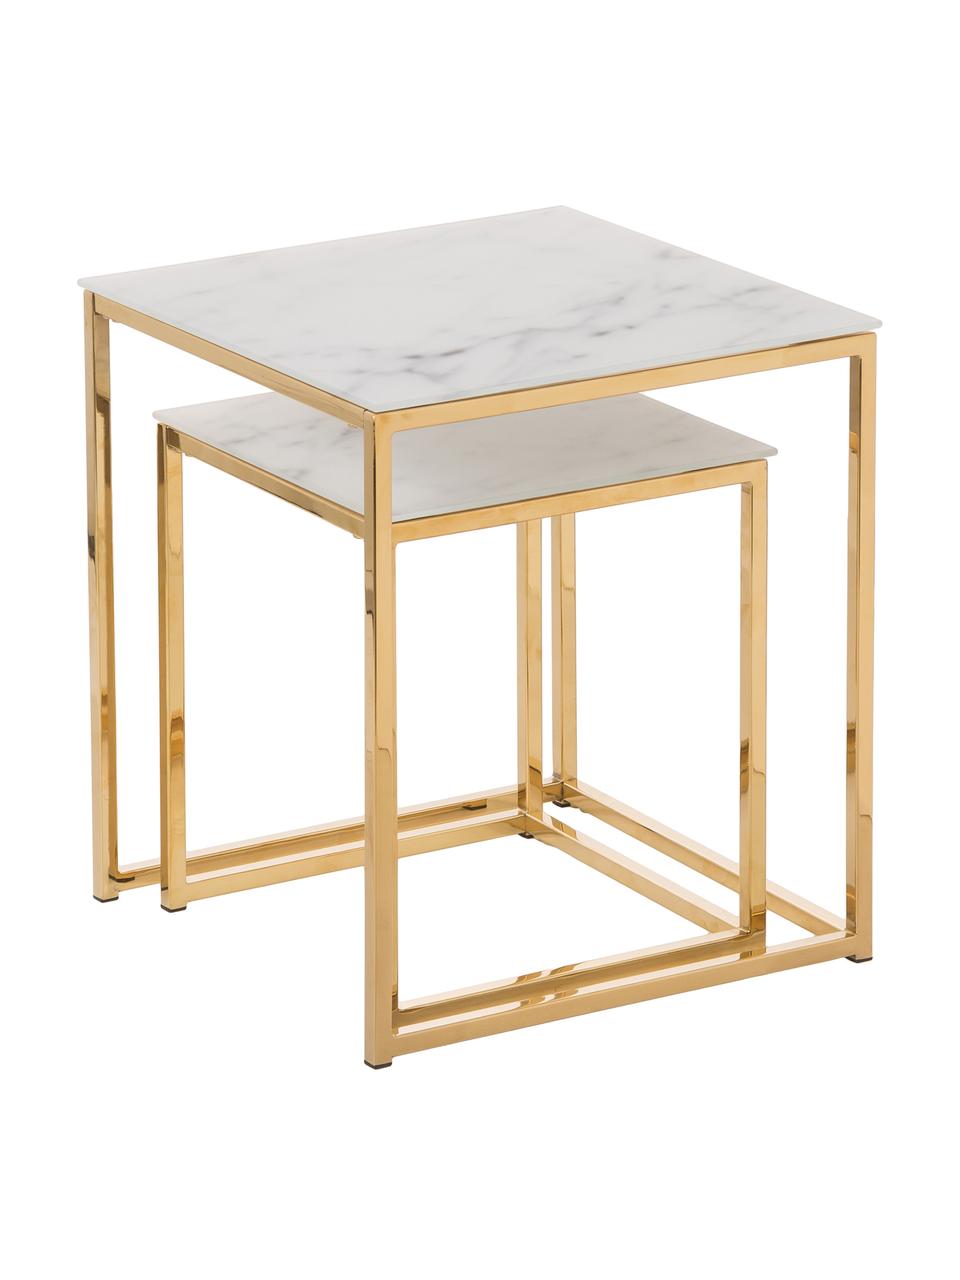 Set de mesas auxiliares Aruba, 2 pzas., tablero de cristal en aspecto mármol, Tablero: vidrio, Estructura: metal recubierto, Aspecto mármol blanco, dorado, Set de diferentes tamaños